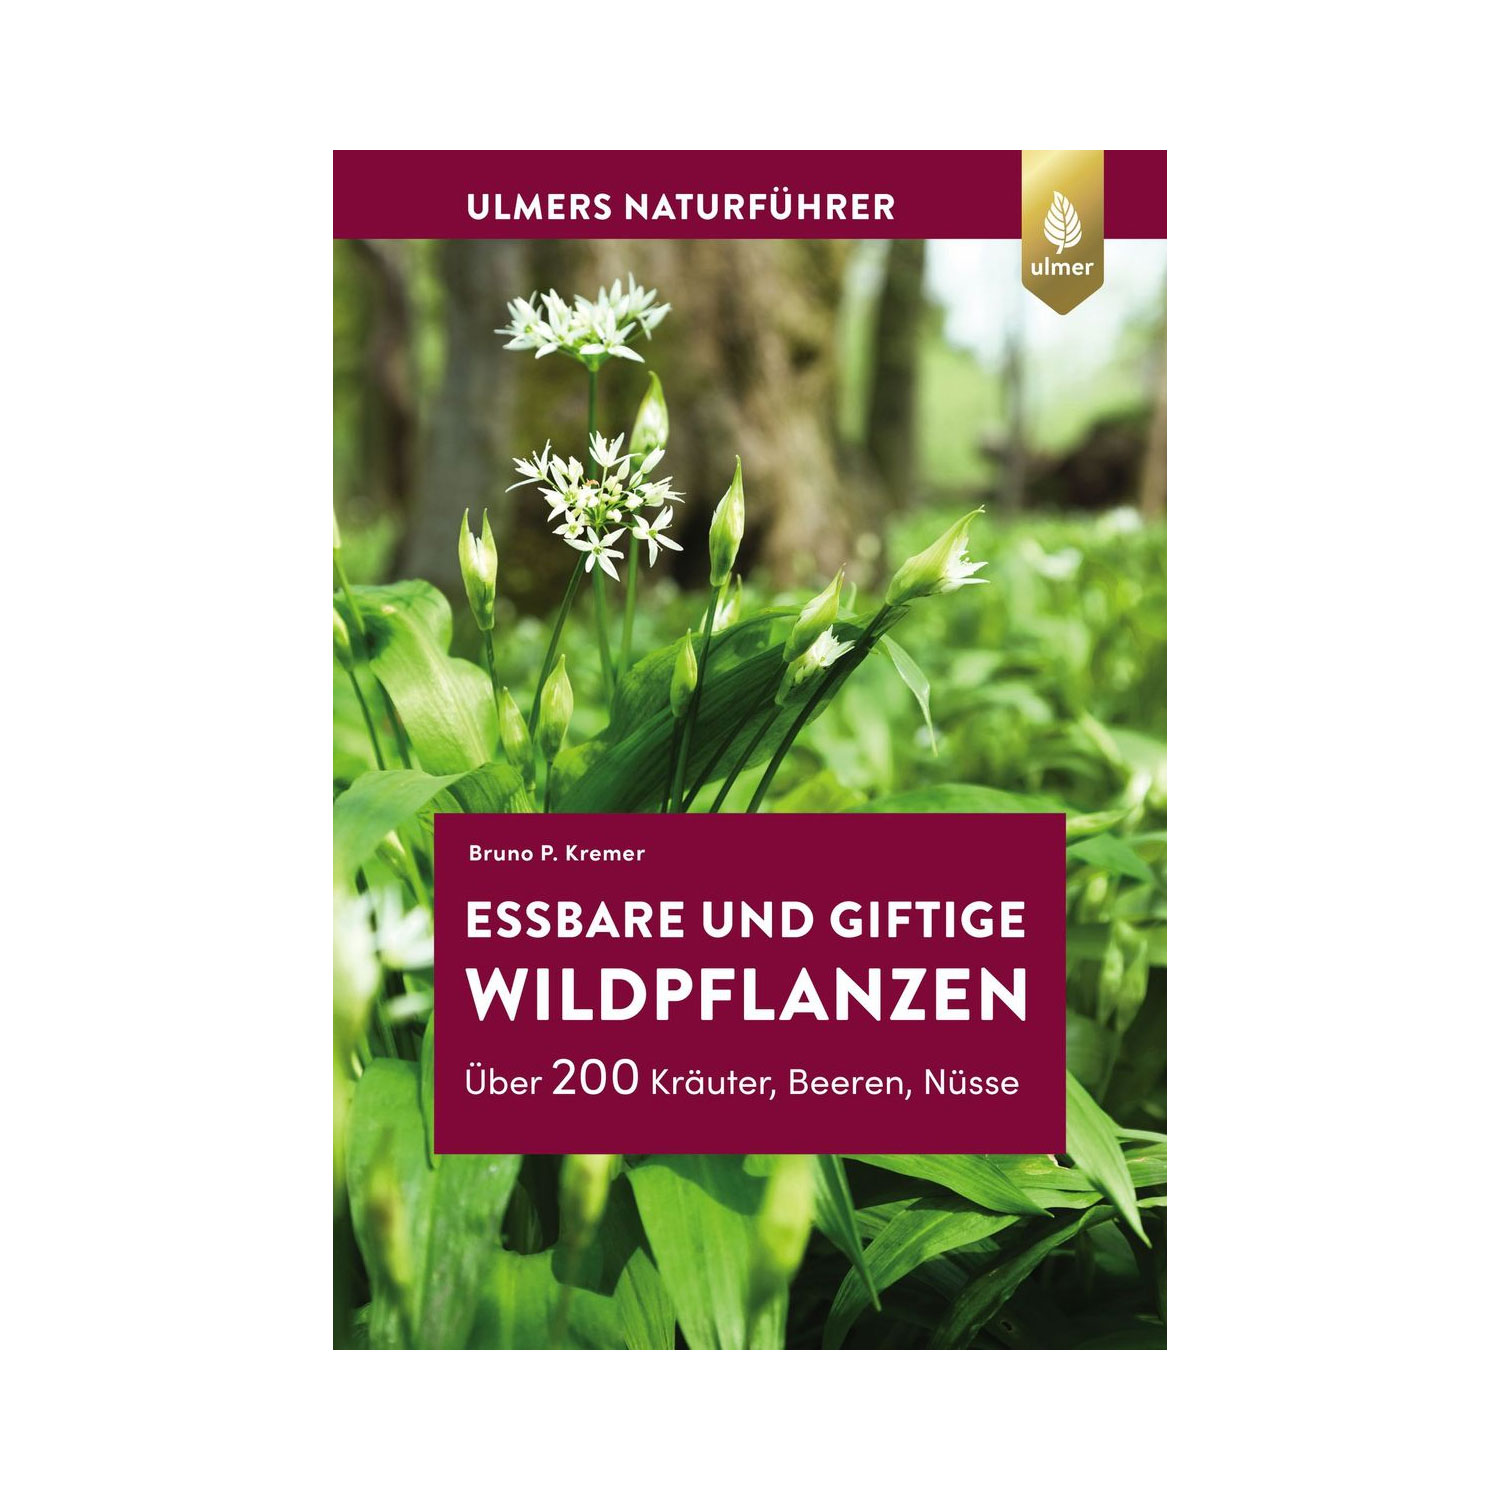 Essbare und giftige Wildpflanzen - ein kleiner Naturfphrer mit Rezepten aus dem Ulmer Verlag